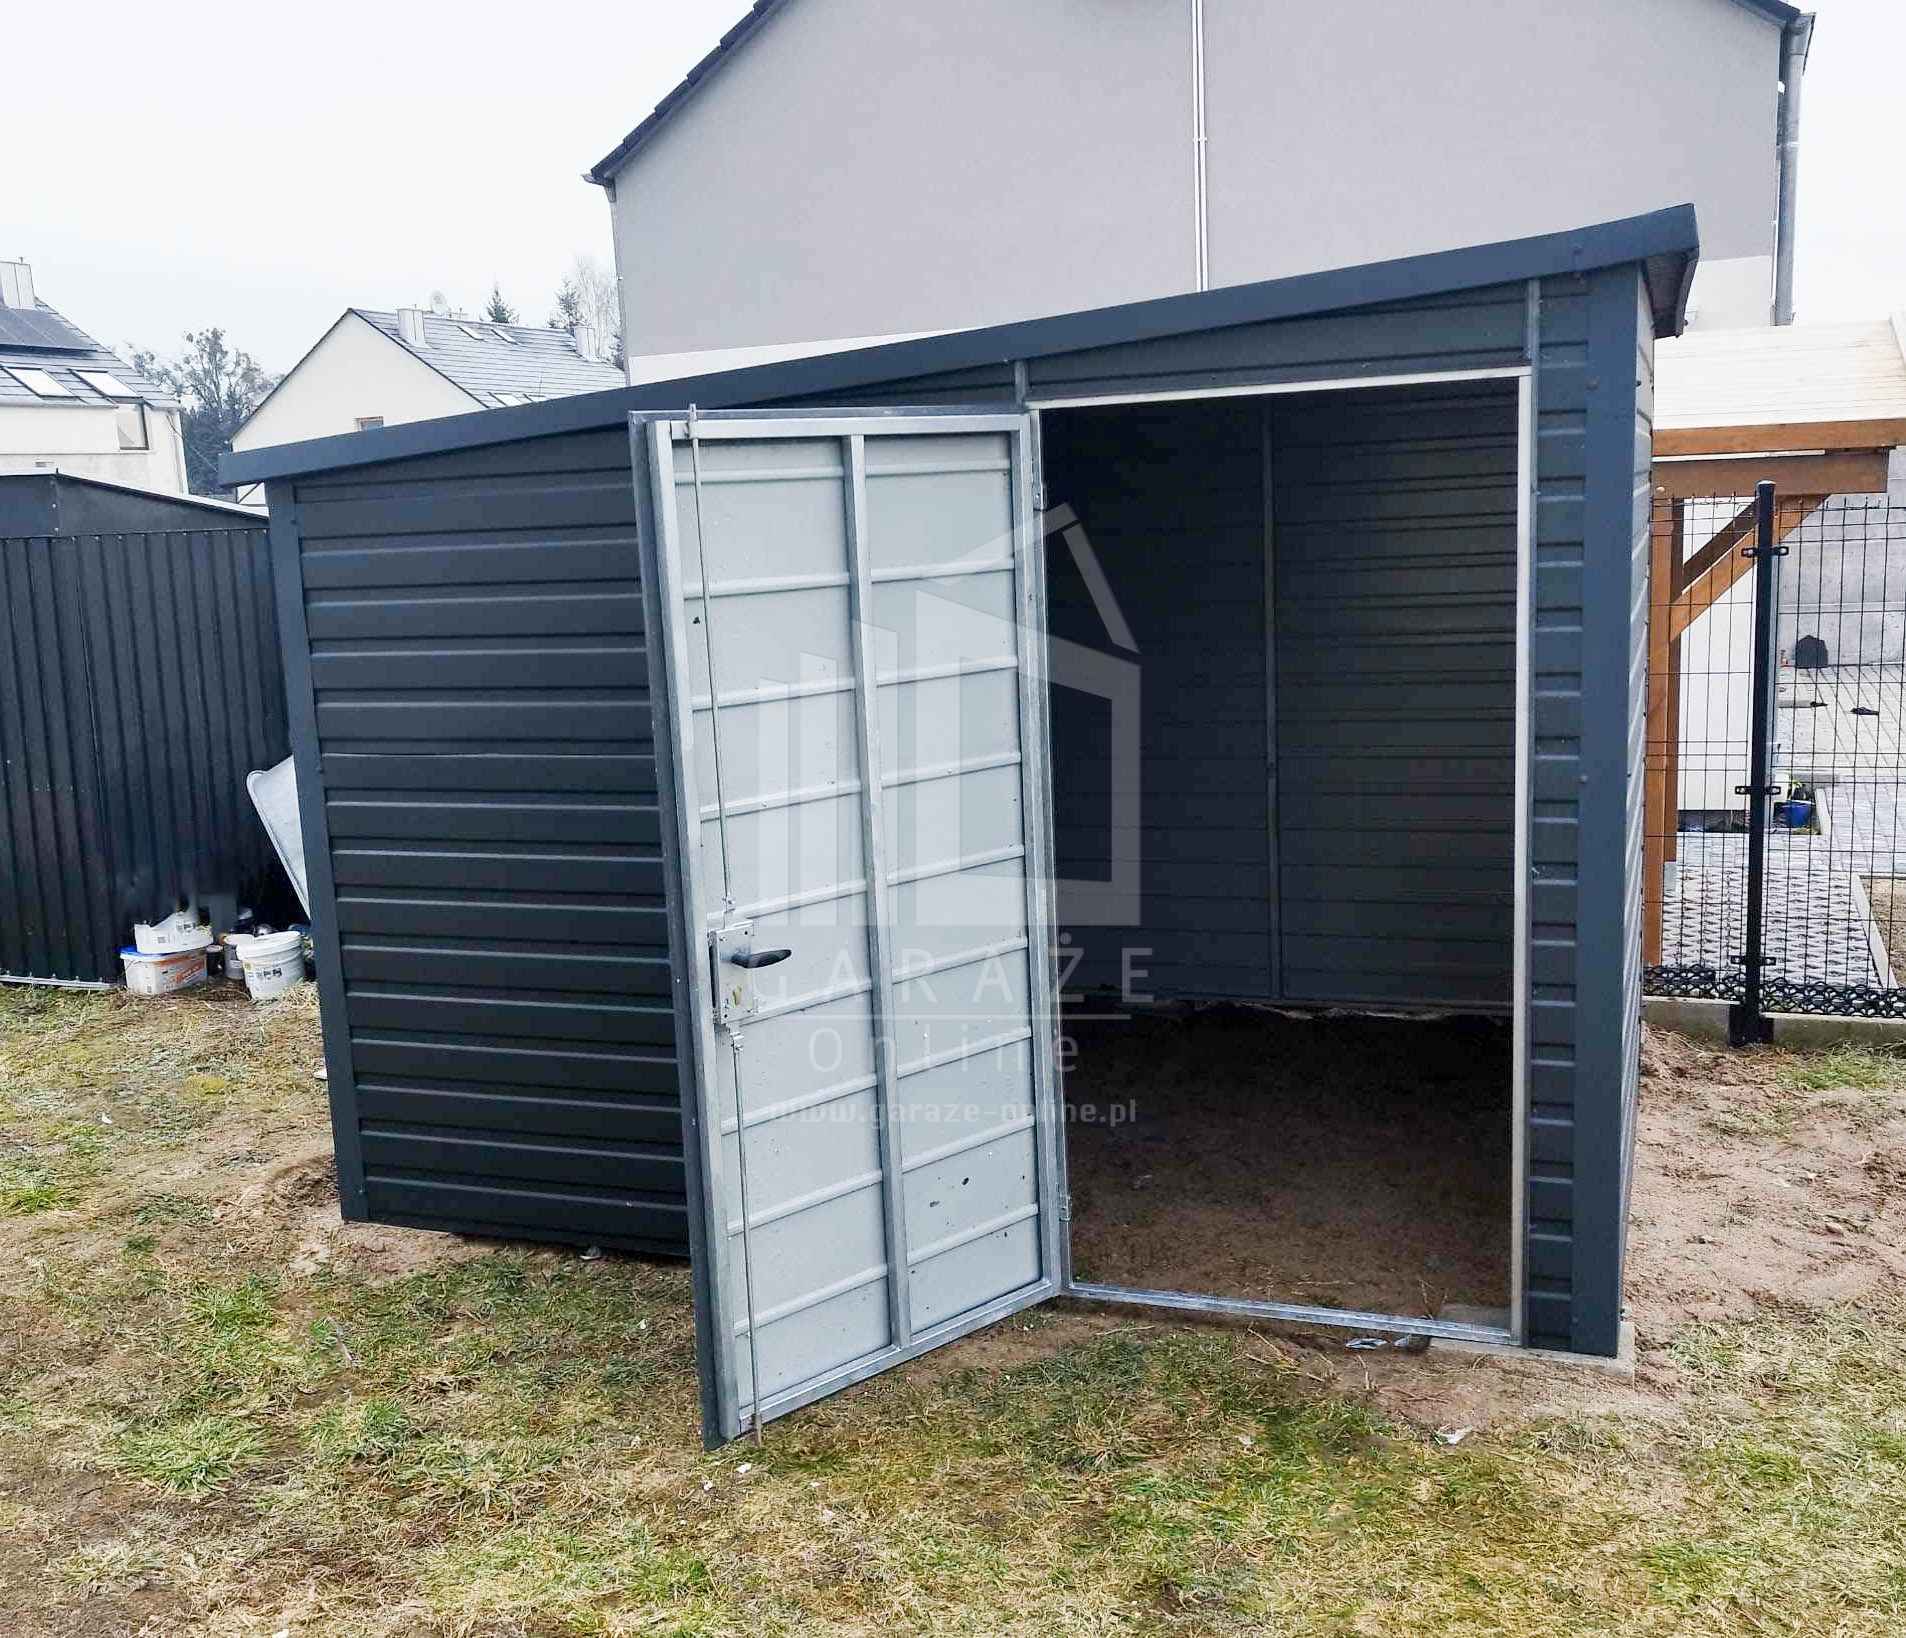 Domek Ogrodowy - Schowek - Garaż 3x2,5 drzwi Antracyt - spad bok ID490 Łodzia - zdjęcie 4